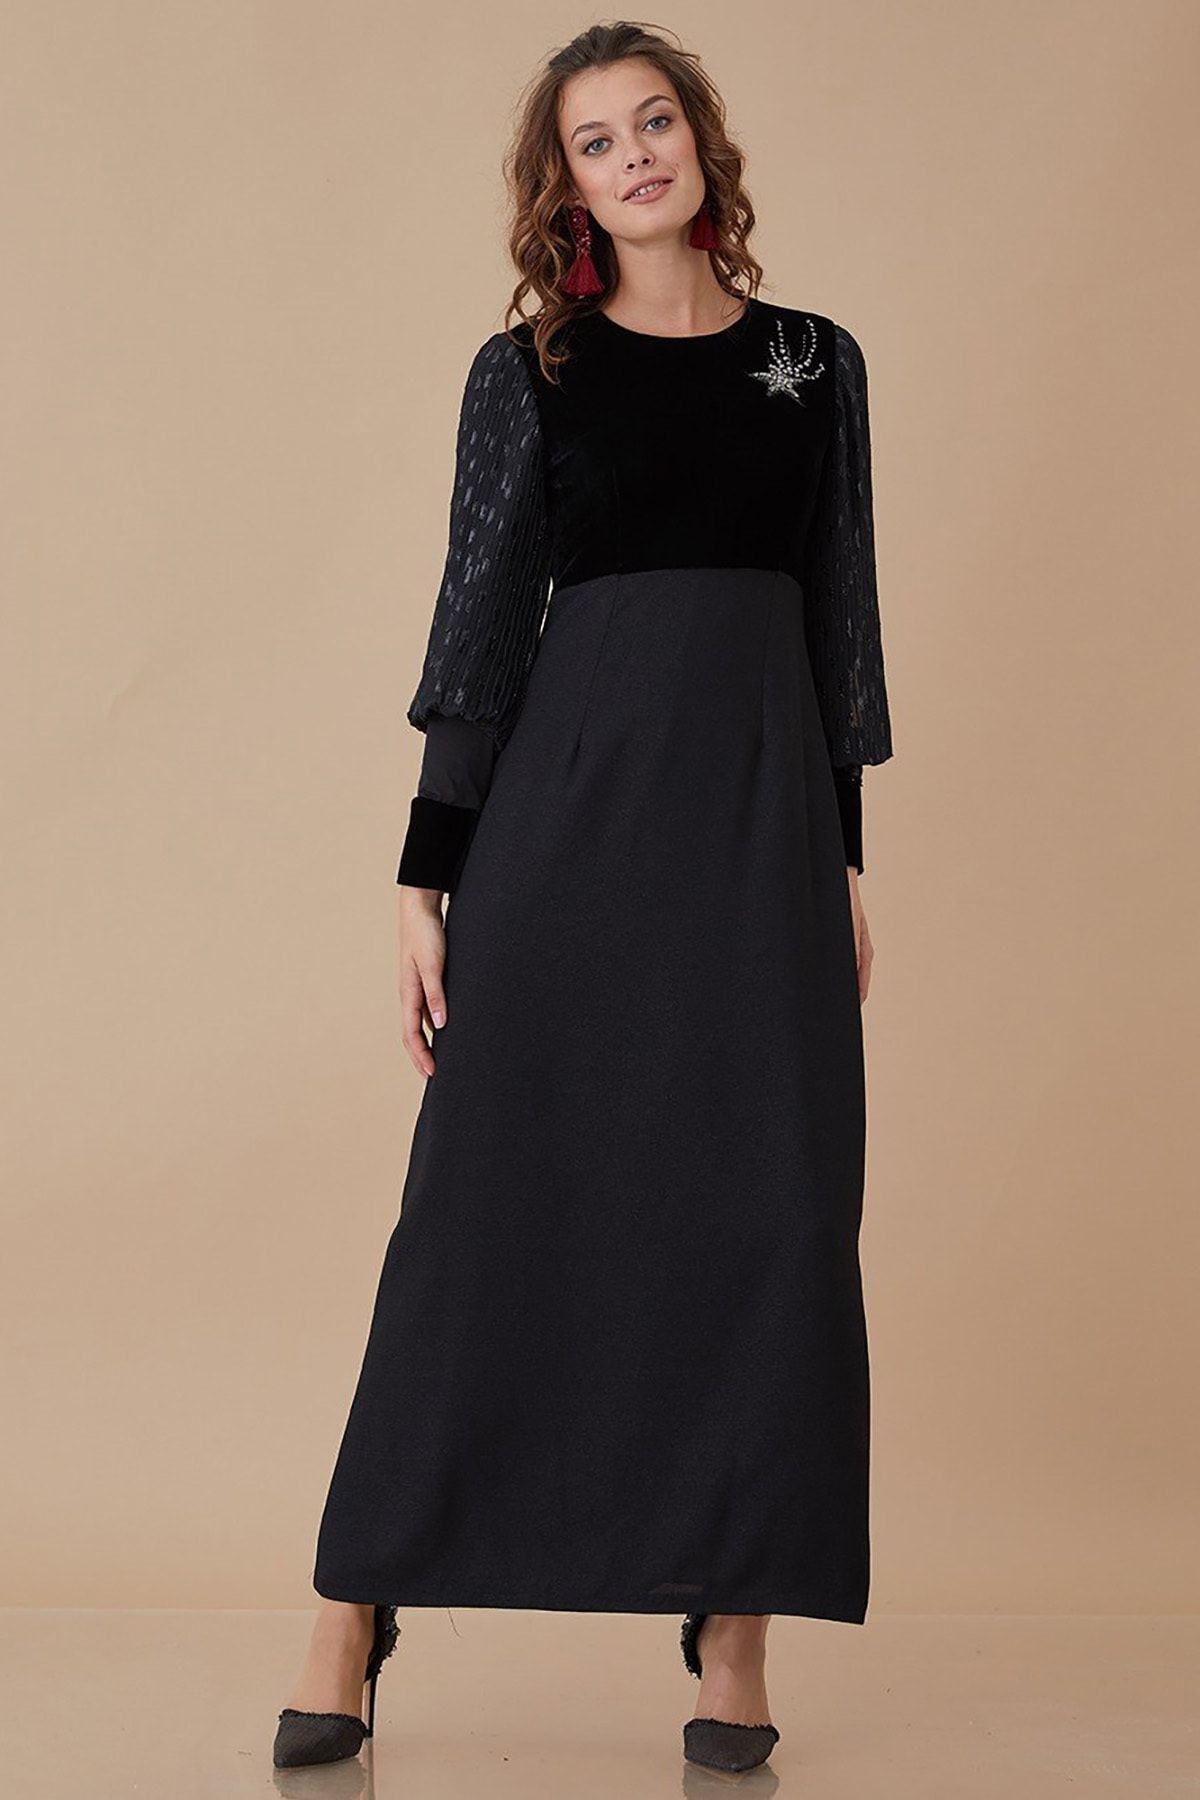 Kayra Kadın Siyah Elbise KA-A8-23014-12